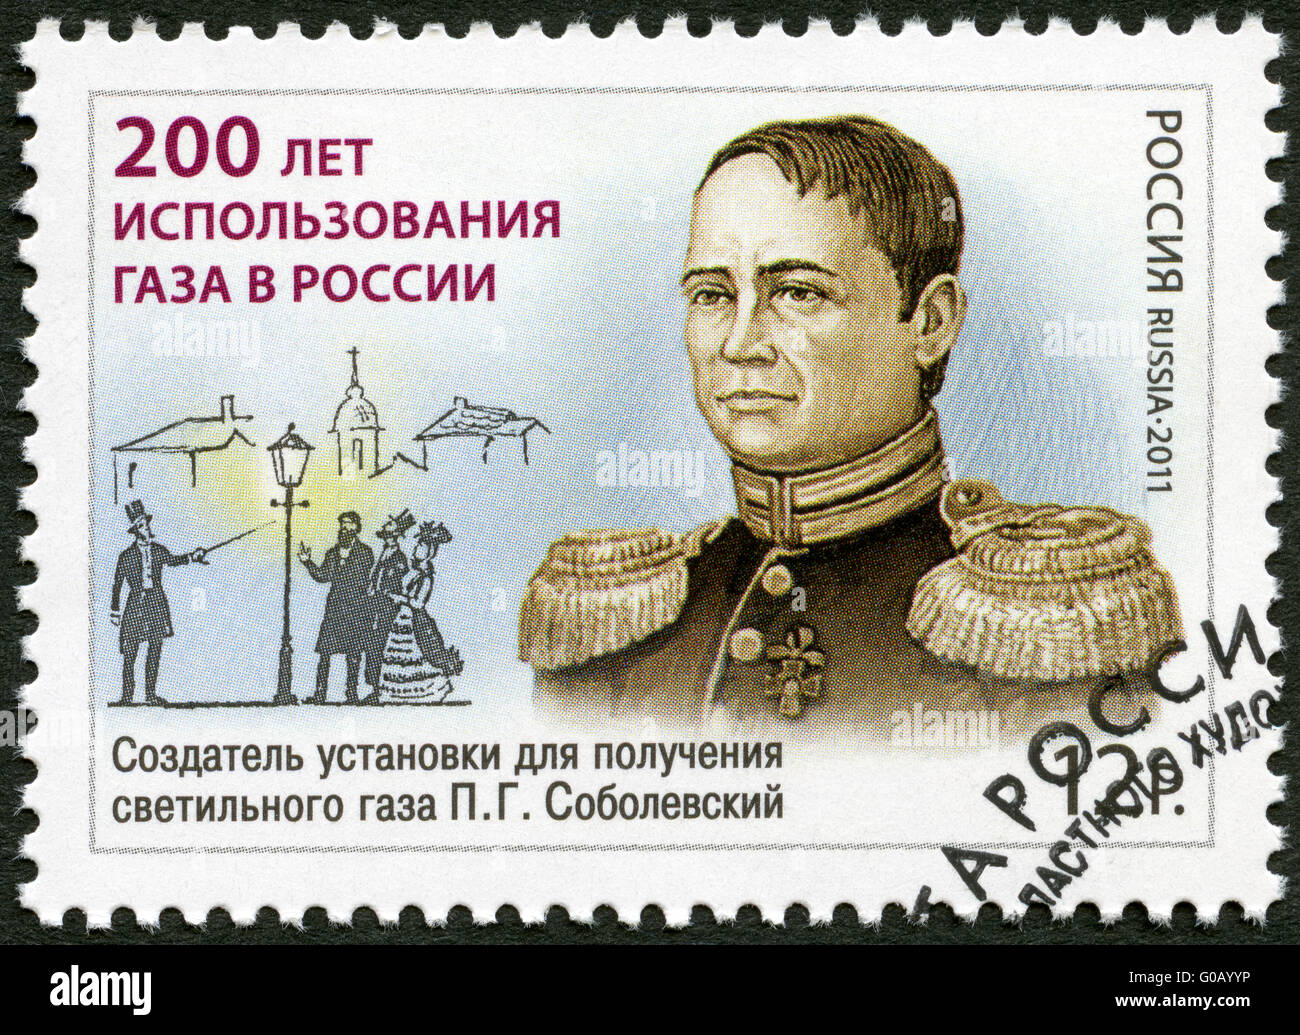 RUSSIA - 2011: mostra P.G. Sobolevsky (1781-1841), il 200 anniversario di utilizzo del gas in Russia Foto Stock